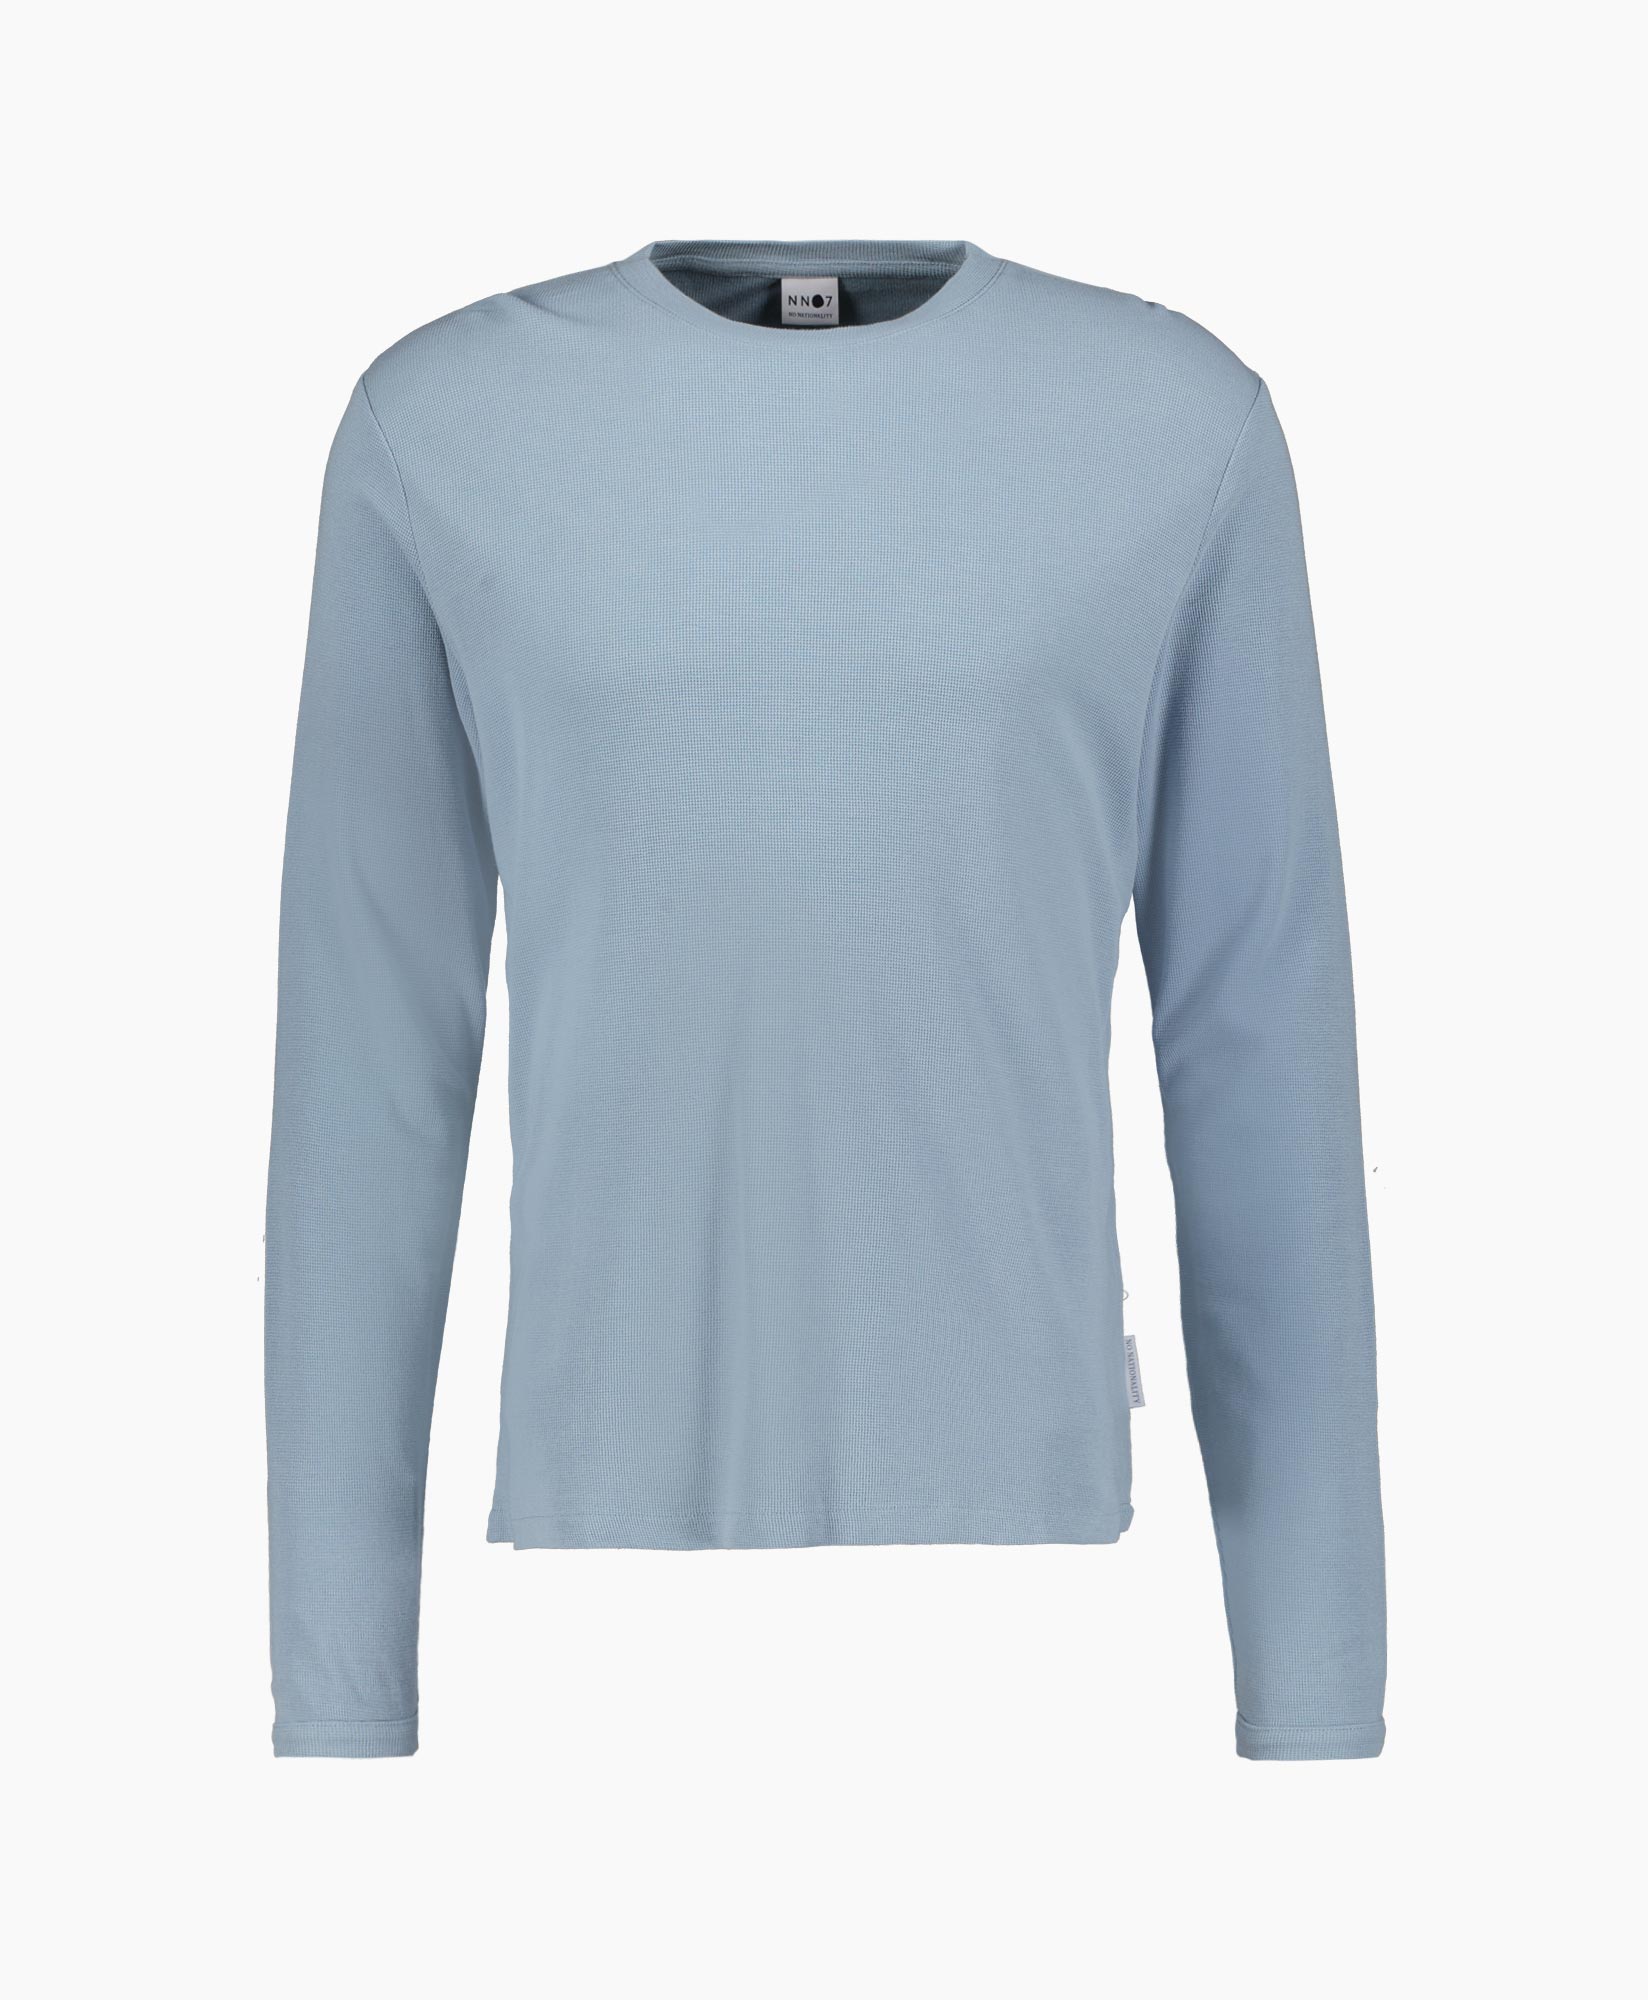 Nn07 Sweater Sweater Blauw